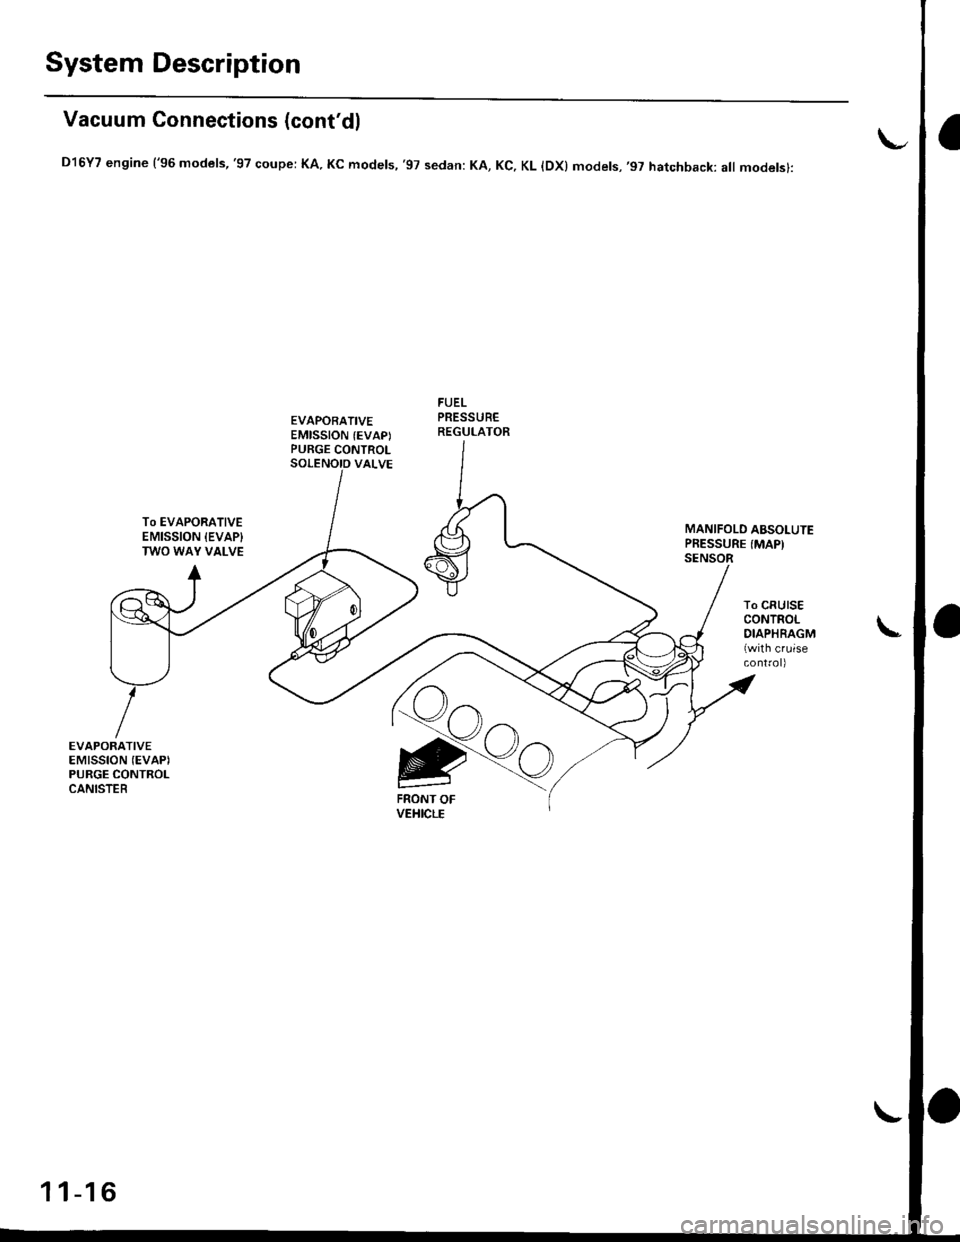 HONDA CIVIC 1999 6.G Workshop Manual System Description
Vacuum Connections (contdl
D16Y7 engine (96 models,97 coupe: KA. Kc models, 97 sedan: KA, Kc, KL lDx) models,97 hatchback: all modelsl:
EVAPORATIVEEMISSION (EVAPIPURGE CONTROL
